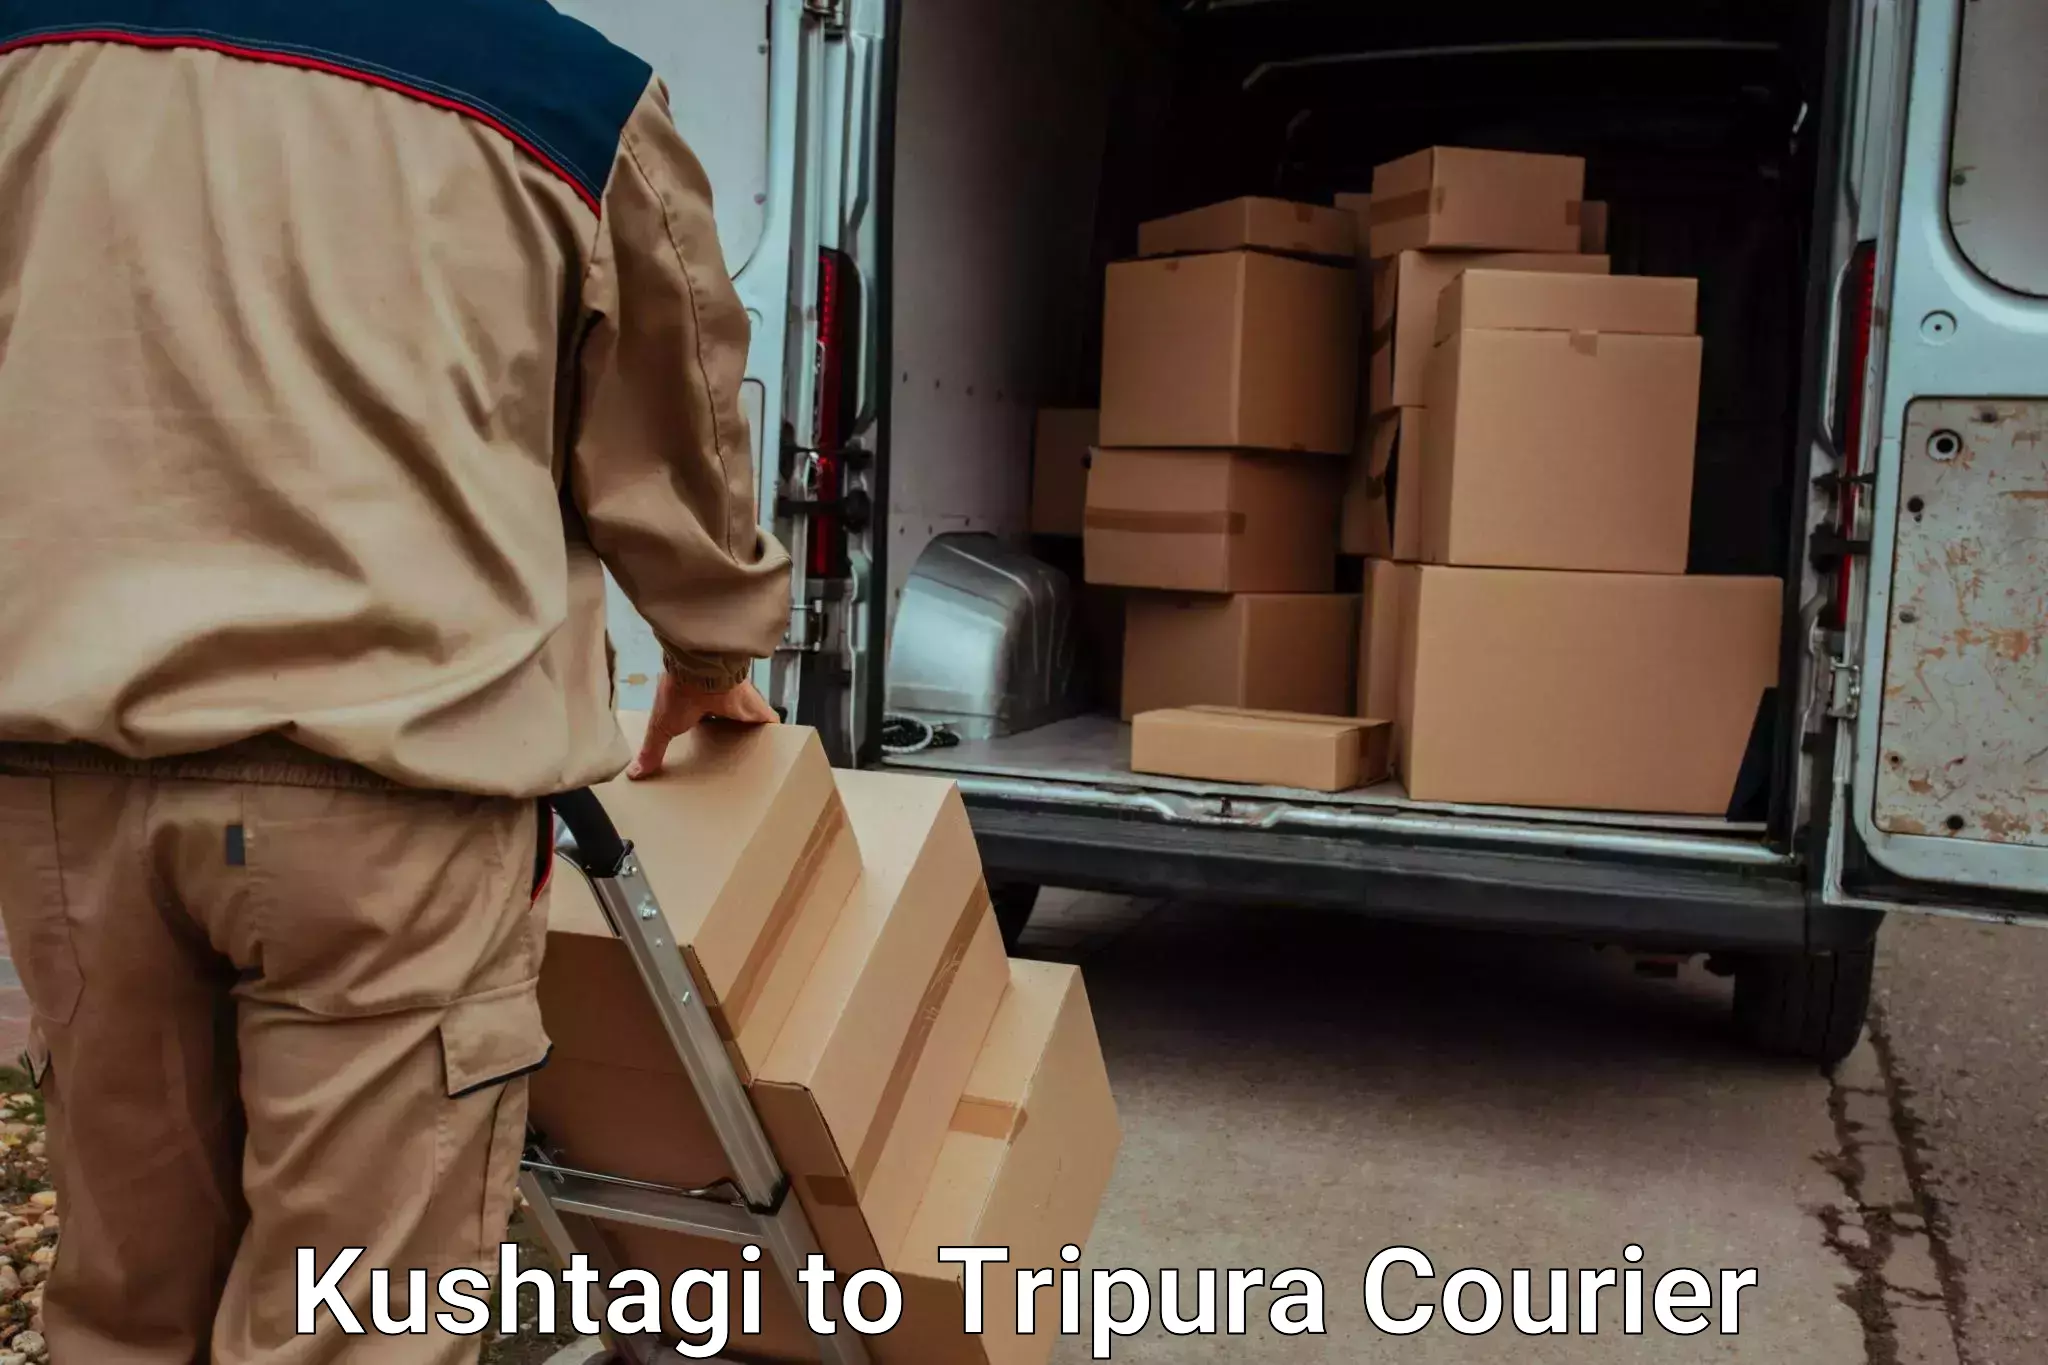 Luggage transit service Kushtagi to North Tripura